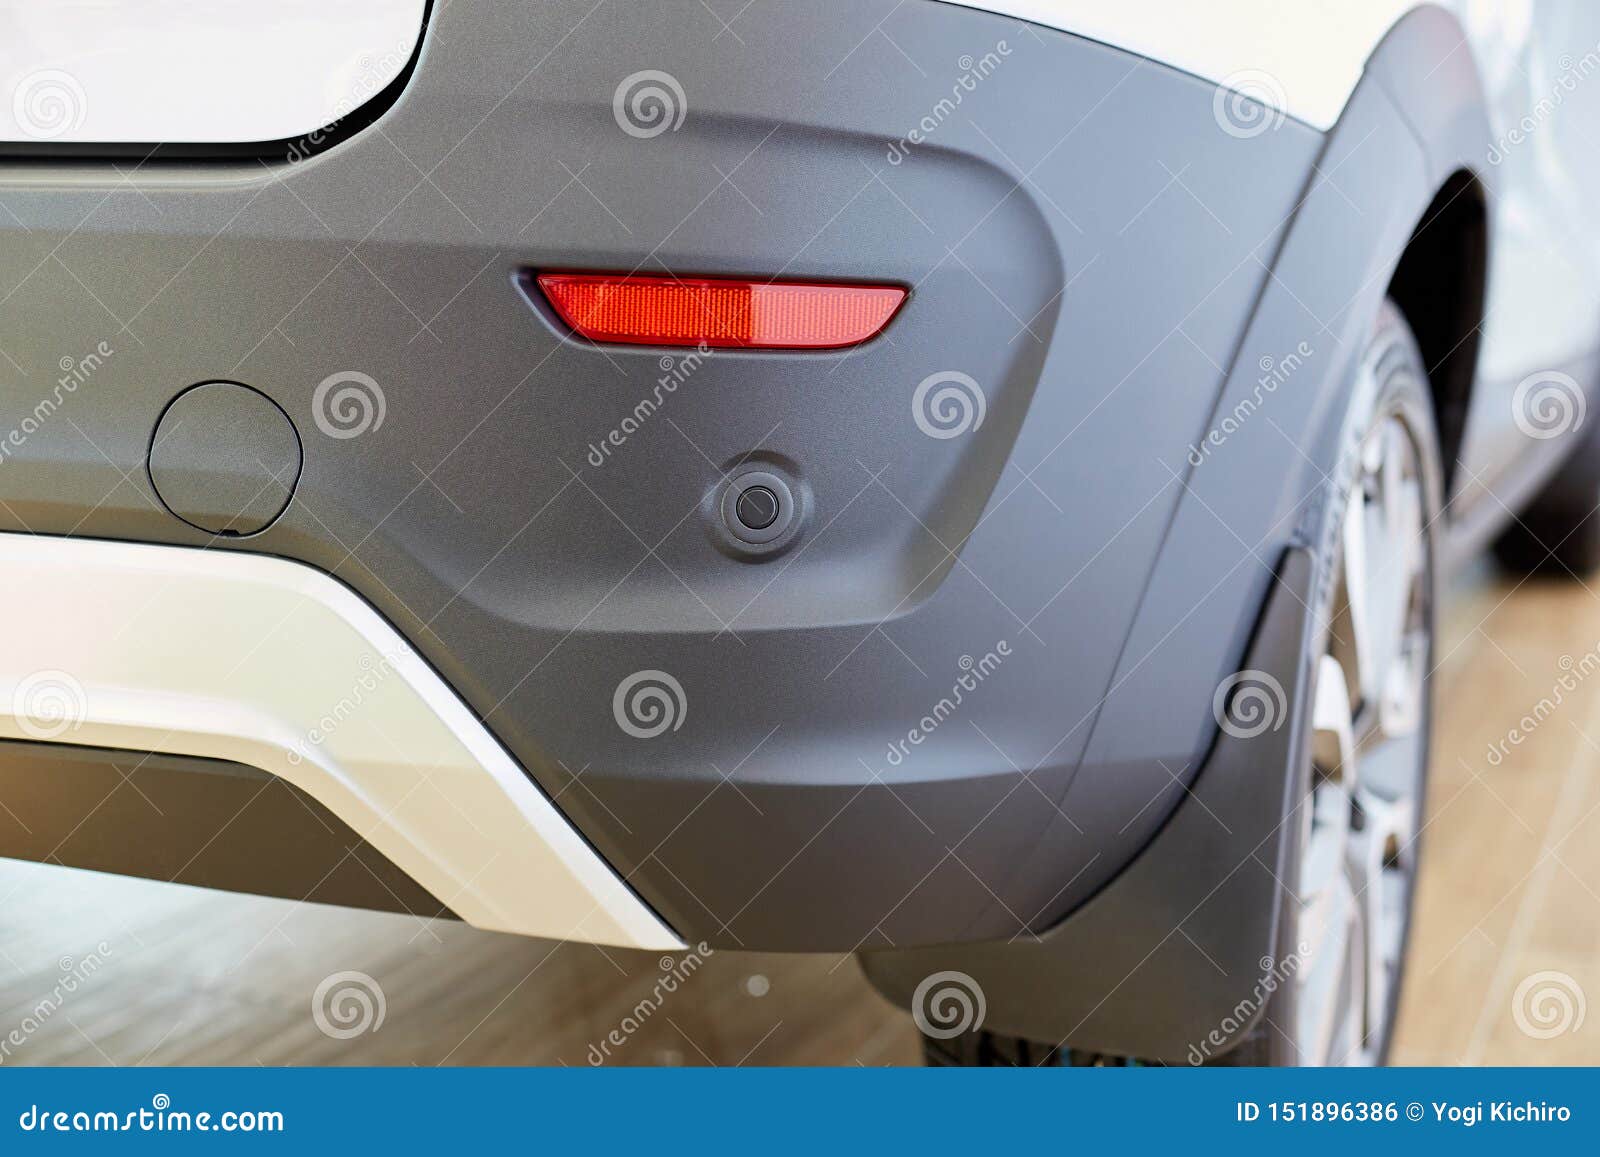 Parkender Sensor Auf Dem Auto, Hintere Stoßstange Mit Reflektor